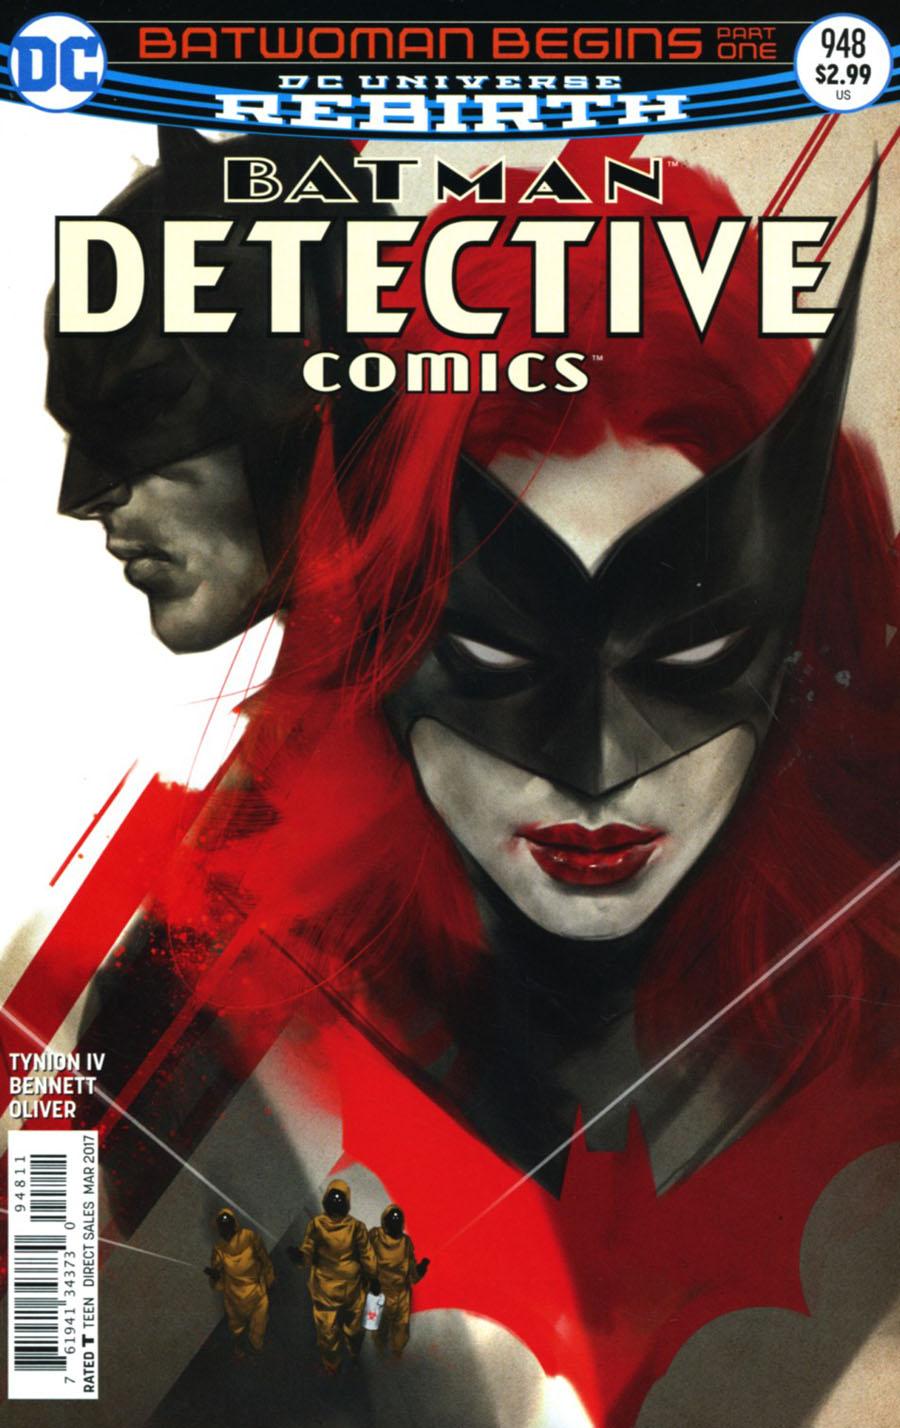 Detective Comics Vol. 2 #948